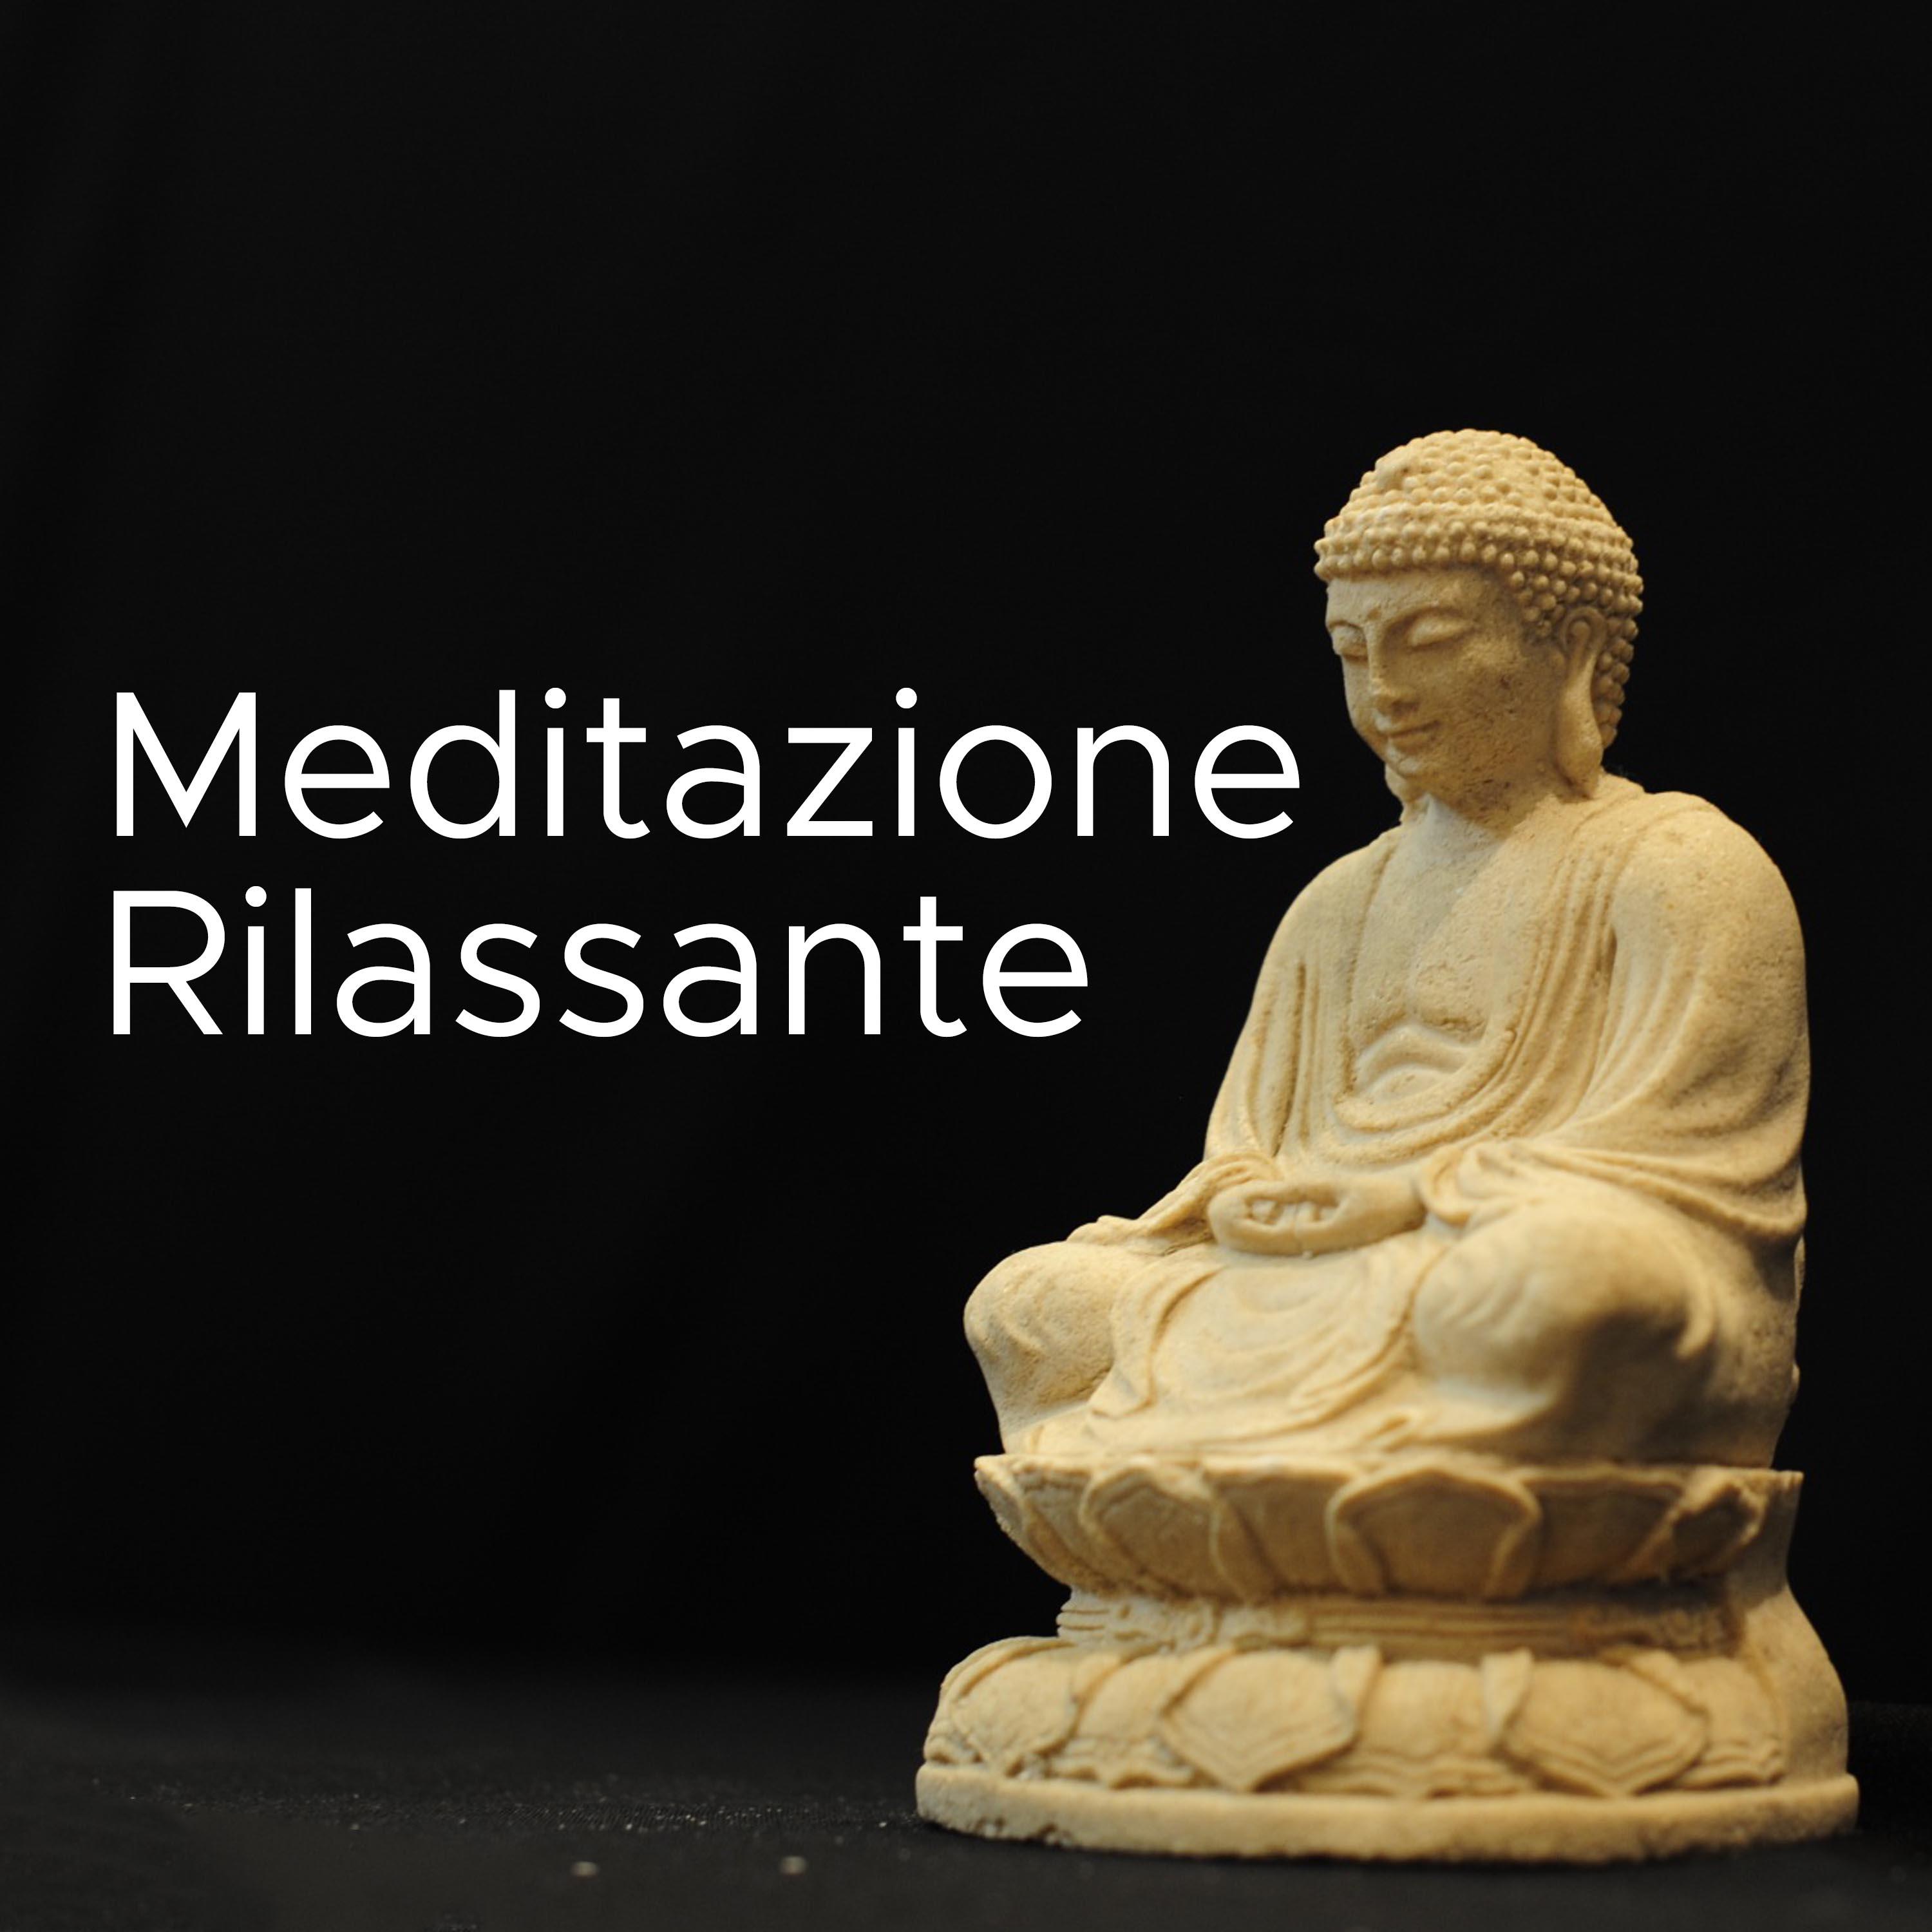 Meditazione Rilassante - Musica Zen per Meditare, Fare Yoga, Rilassarsi, Dormire e Trovare la Pace Interiore